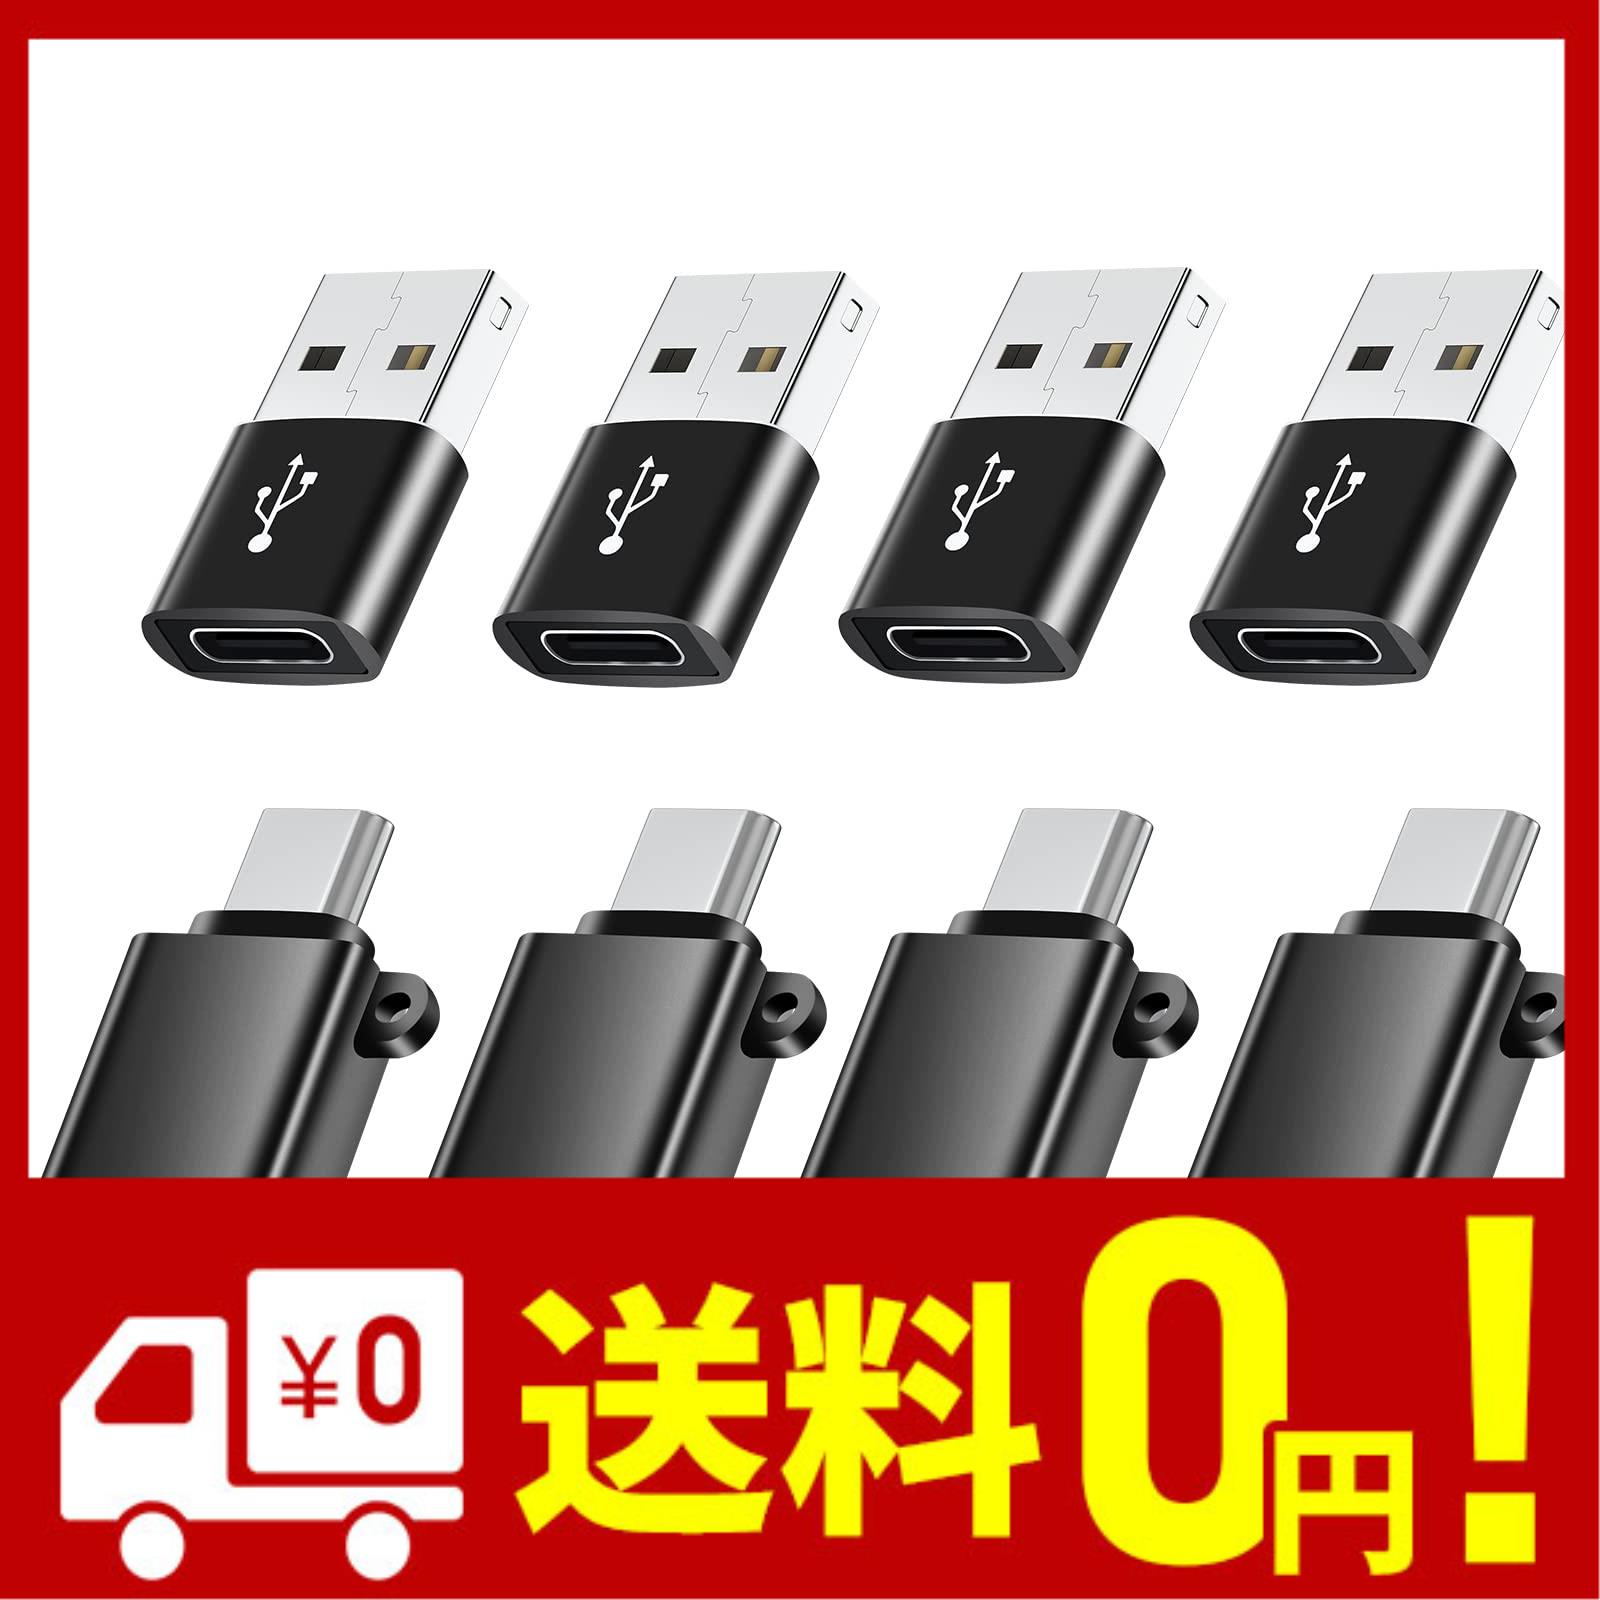 タイプc usb 変換 USB-C USB 3.0 変換アダプタ Type C - USB A 3.0 メス USB CメスからUSBオス変換アダプタ iPad USB 変換アダプタ対応